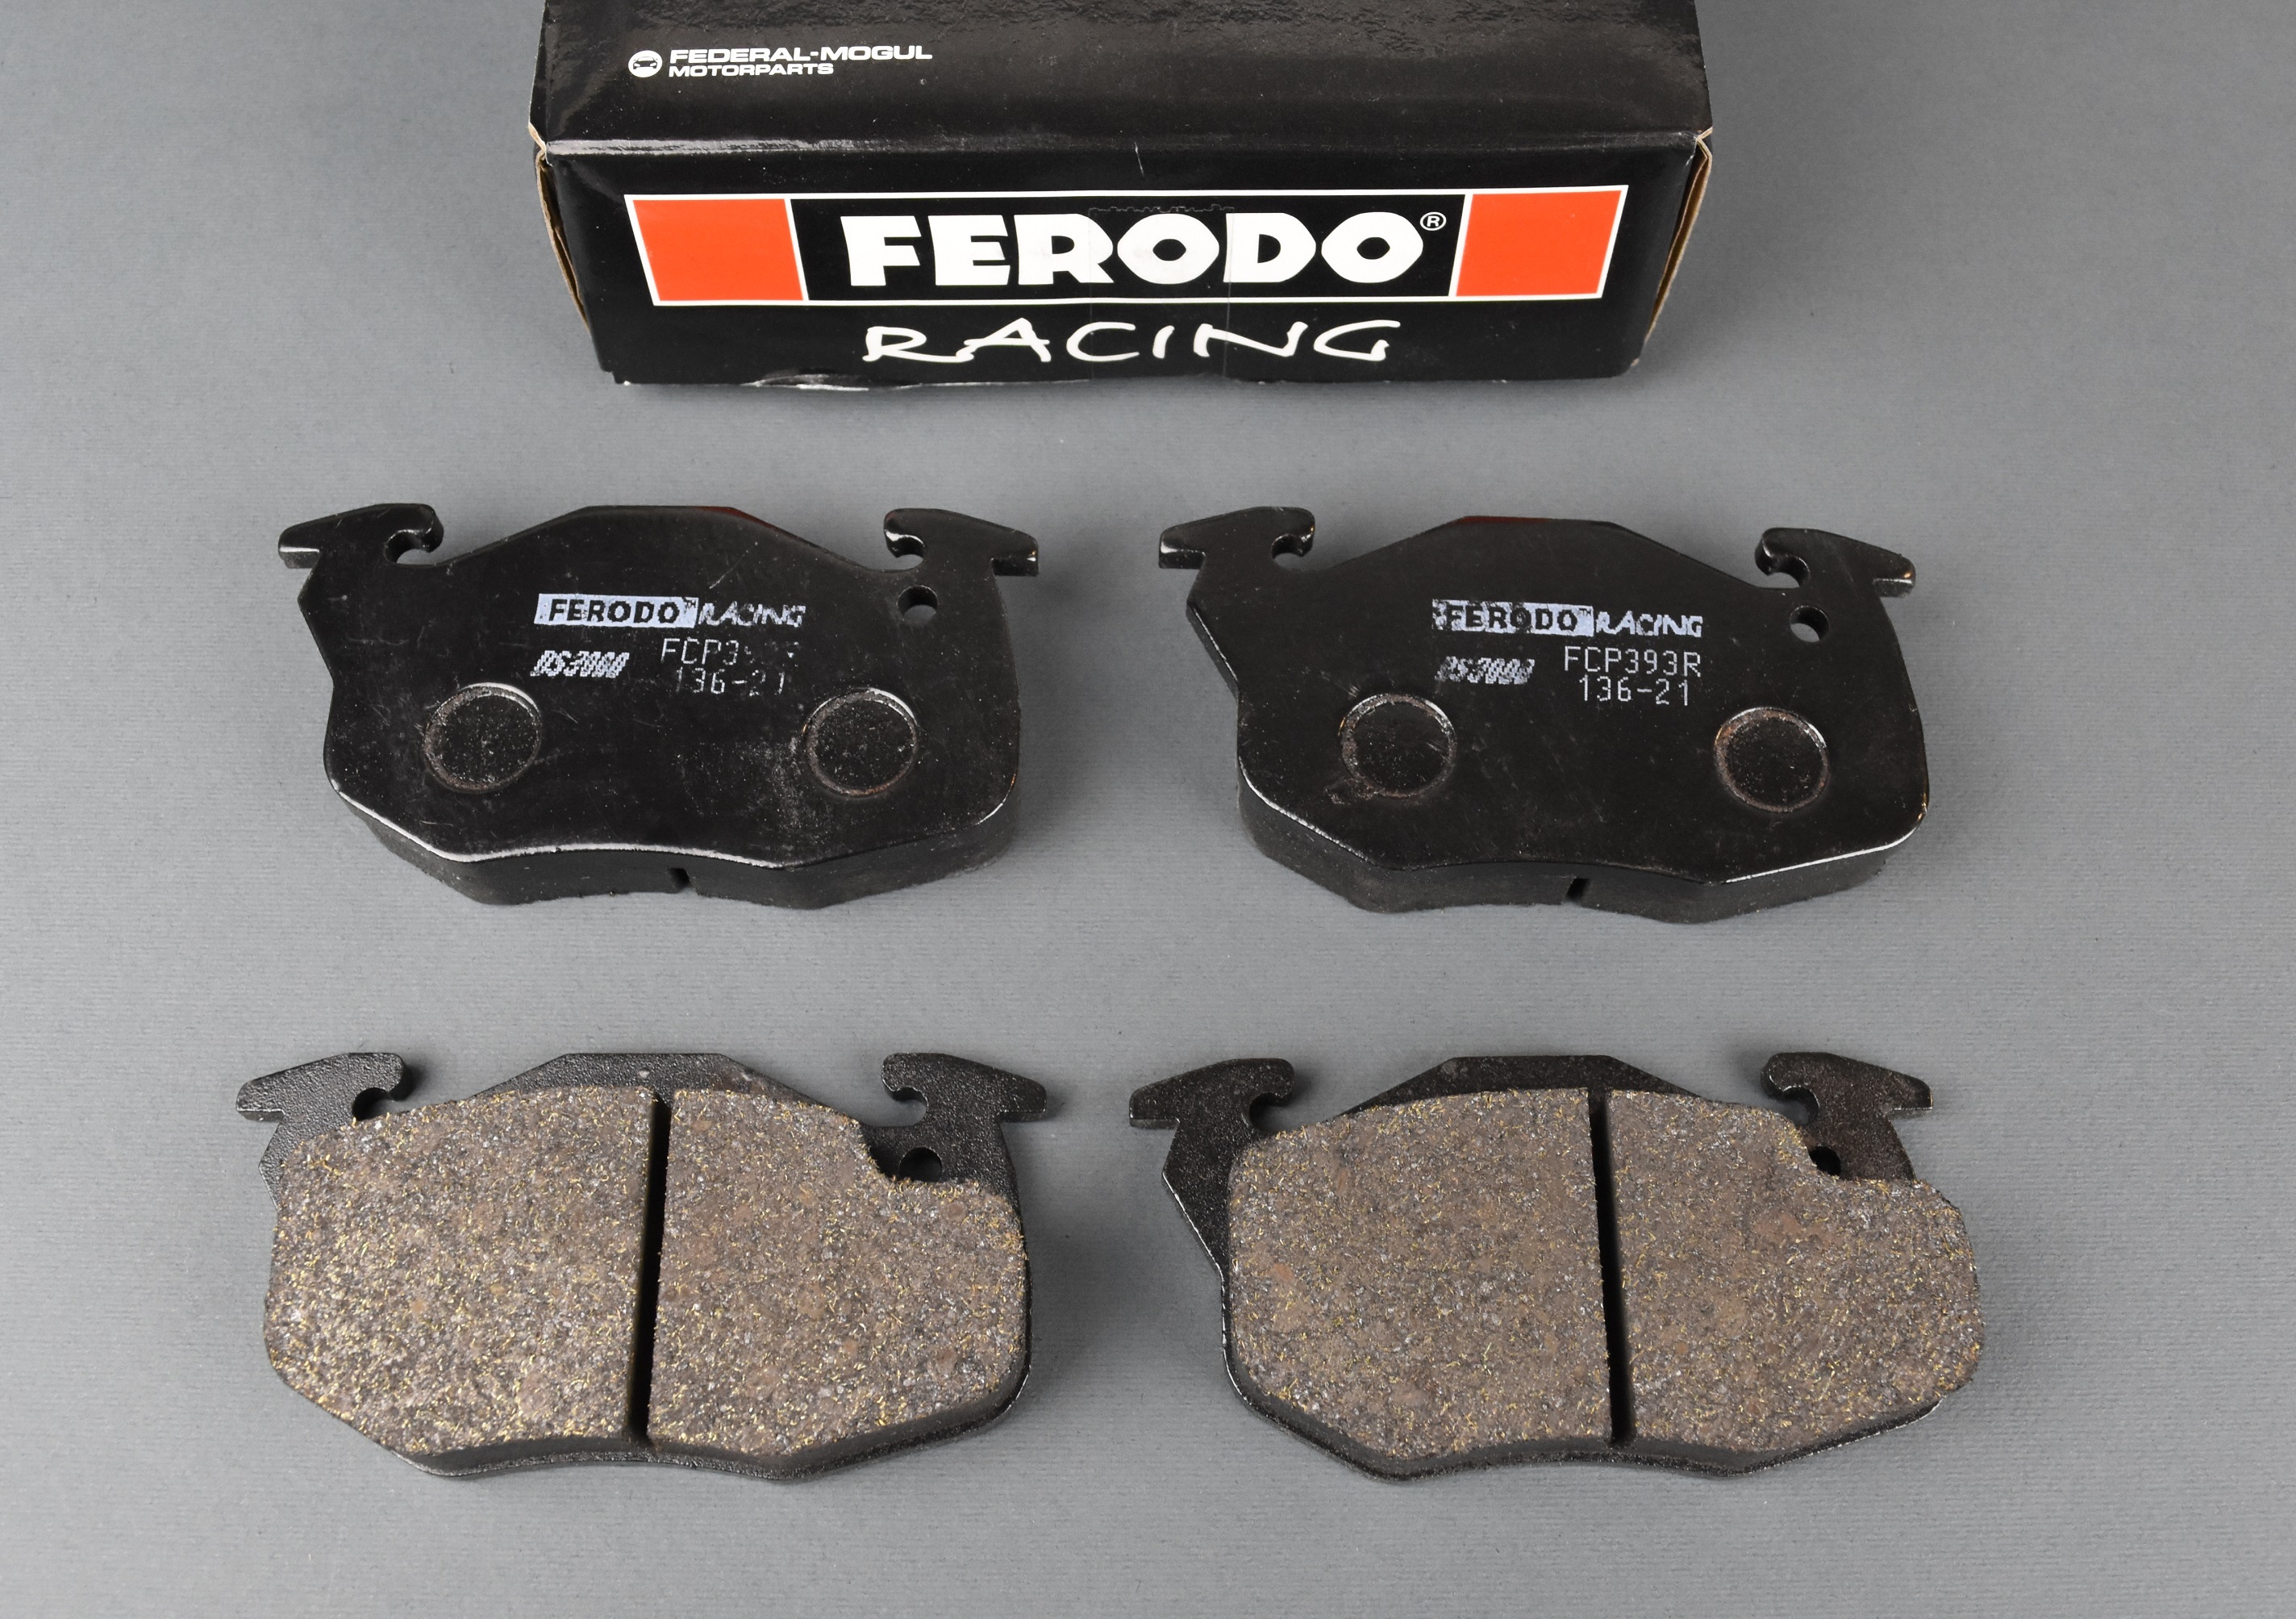 Pastiglie freno anteriori Ferodo Racing Peugeot 106 1300 Rally (pinza di  serie)